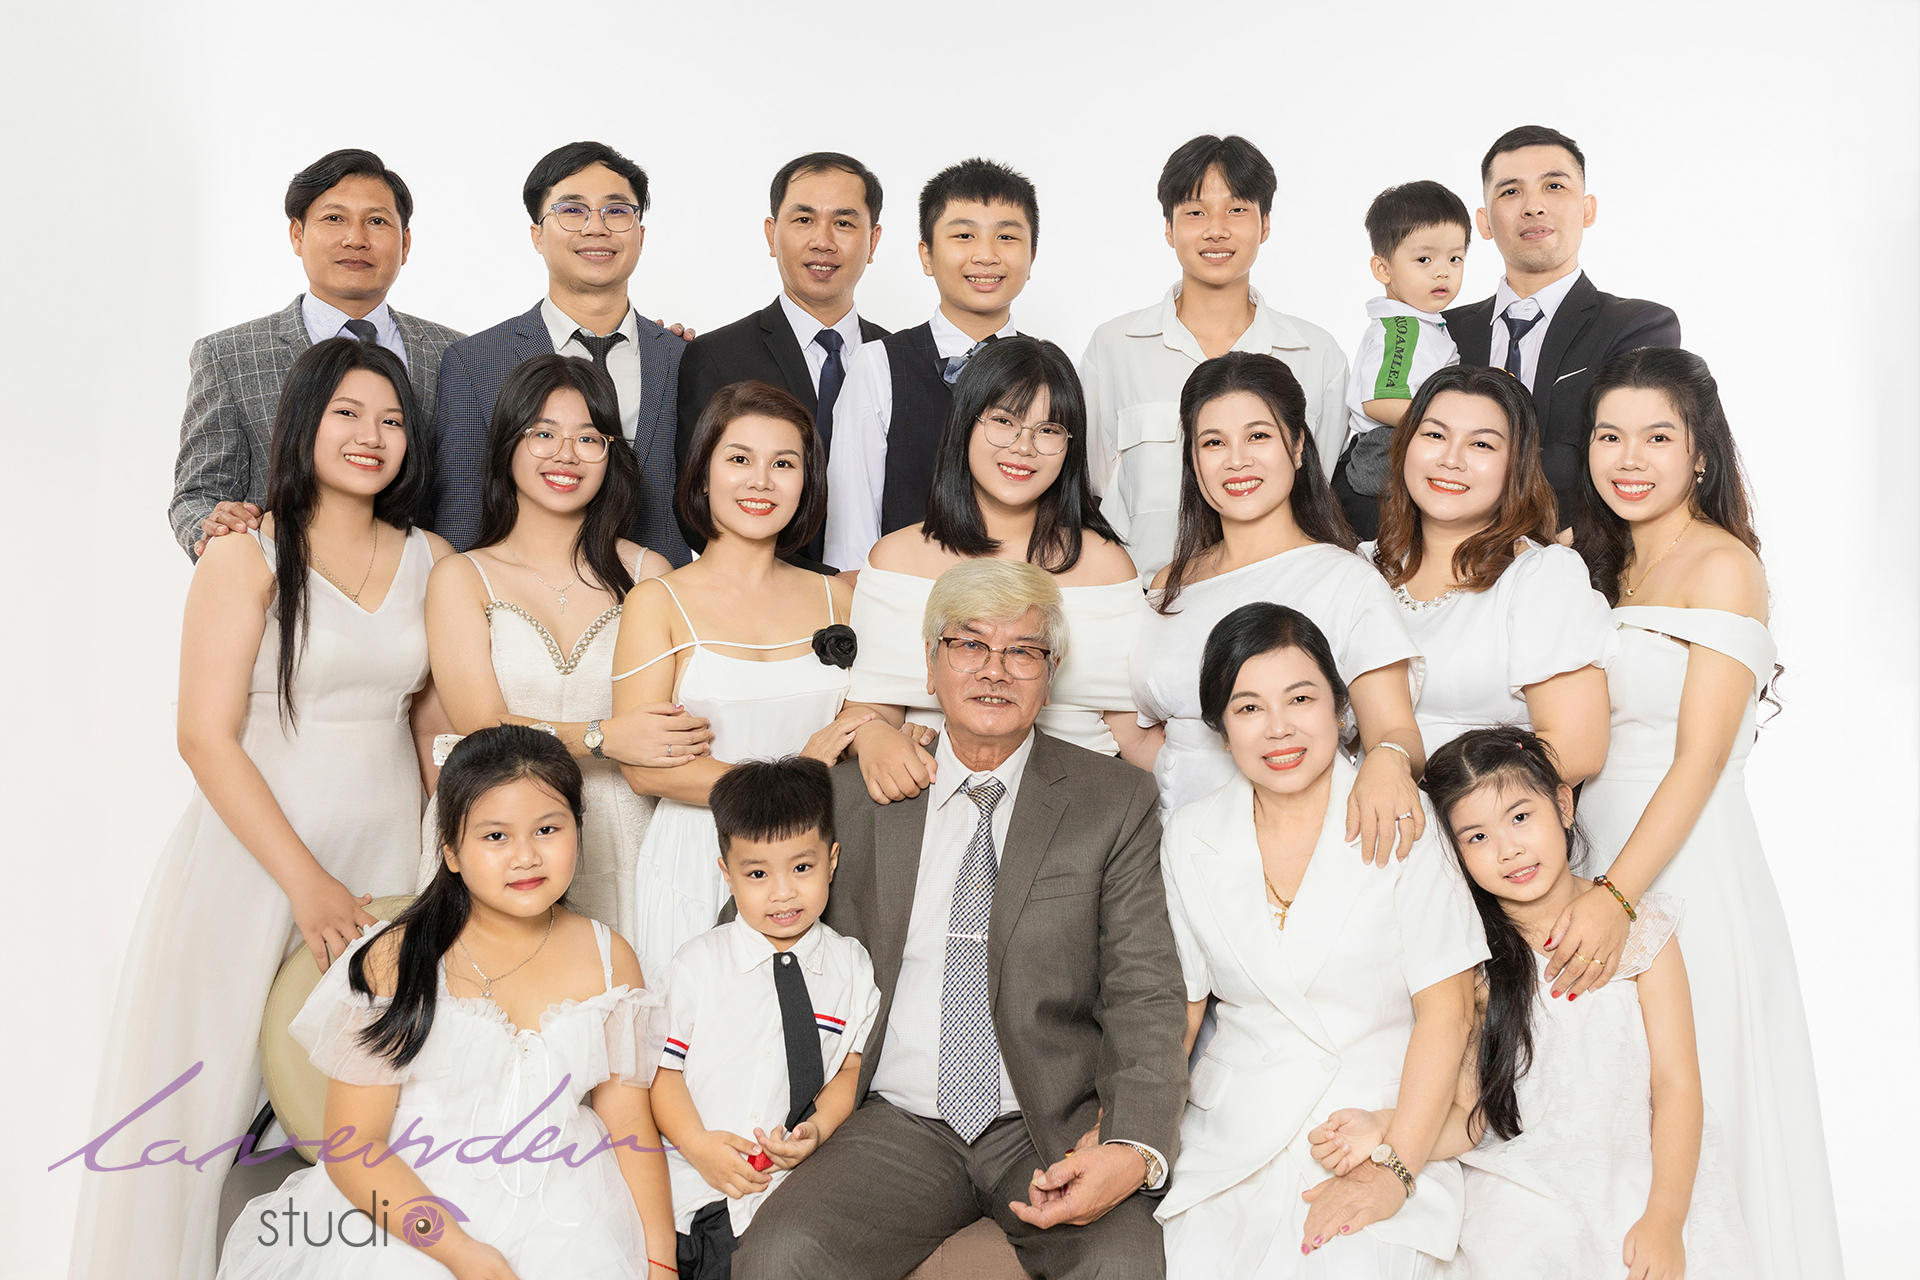 Giá dịch vụ chụp ảnh kỷ niệm cưới cho bố mẹ ở Hà Nội